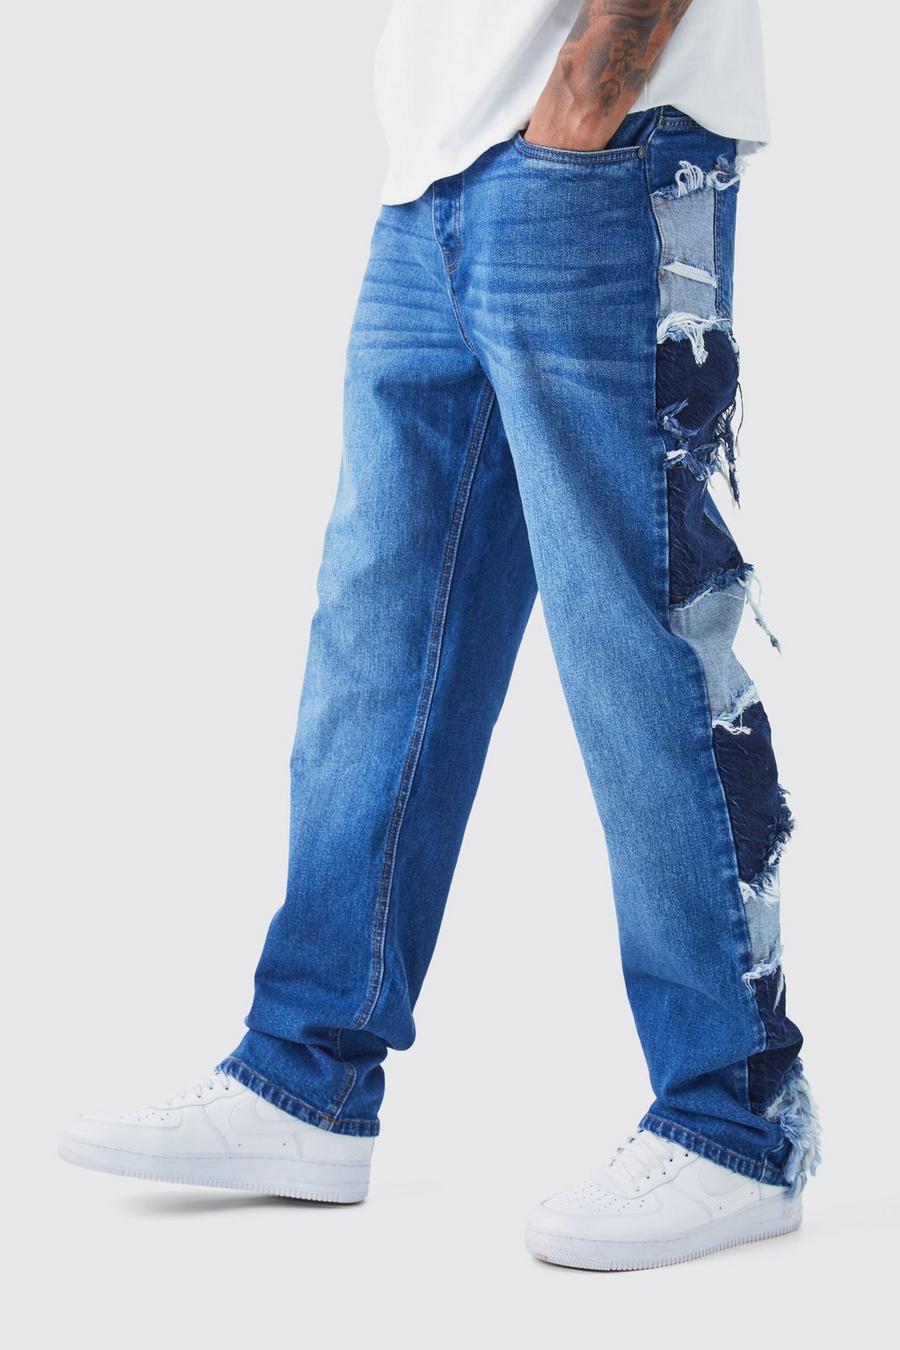 Tall lockere Patchwork Jeans mit Seitenstreifen, Mid blue